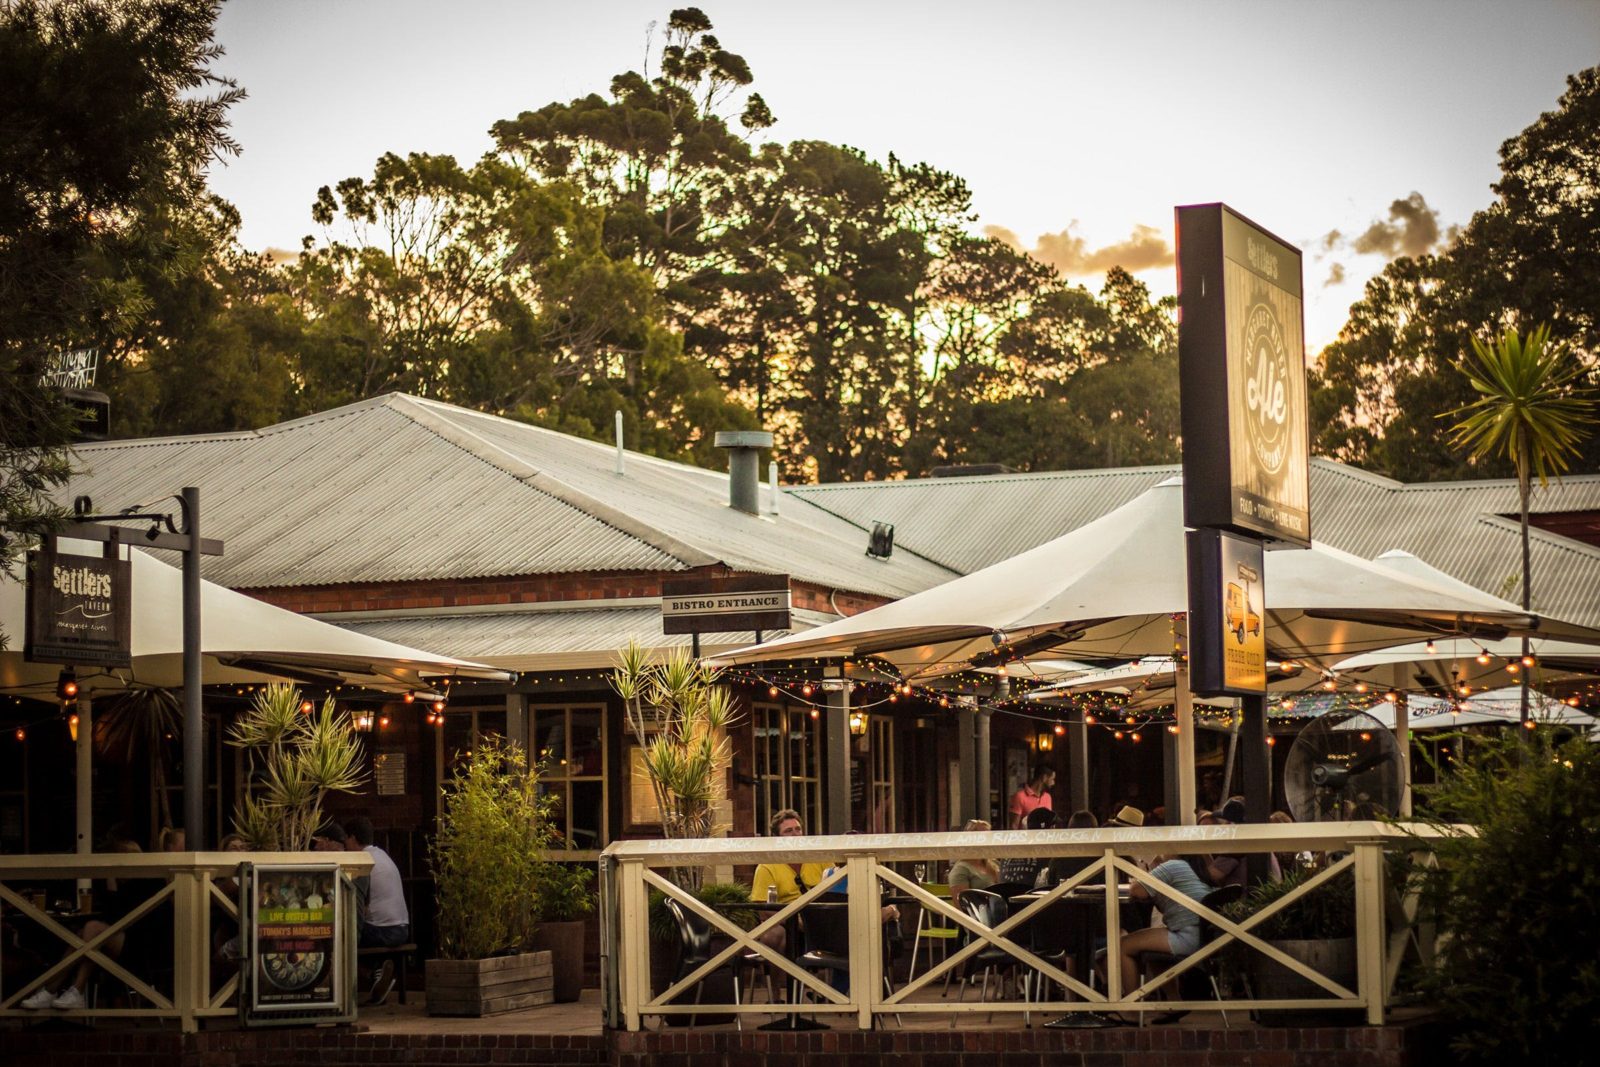 Settlers Tavern, Margaret River, Western Australia